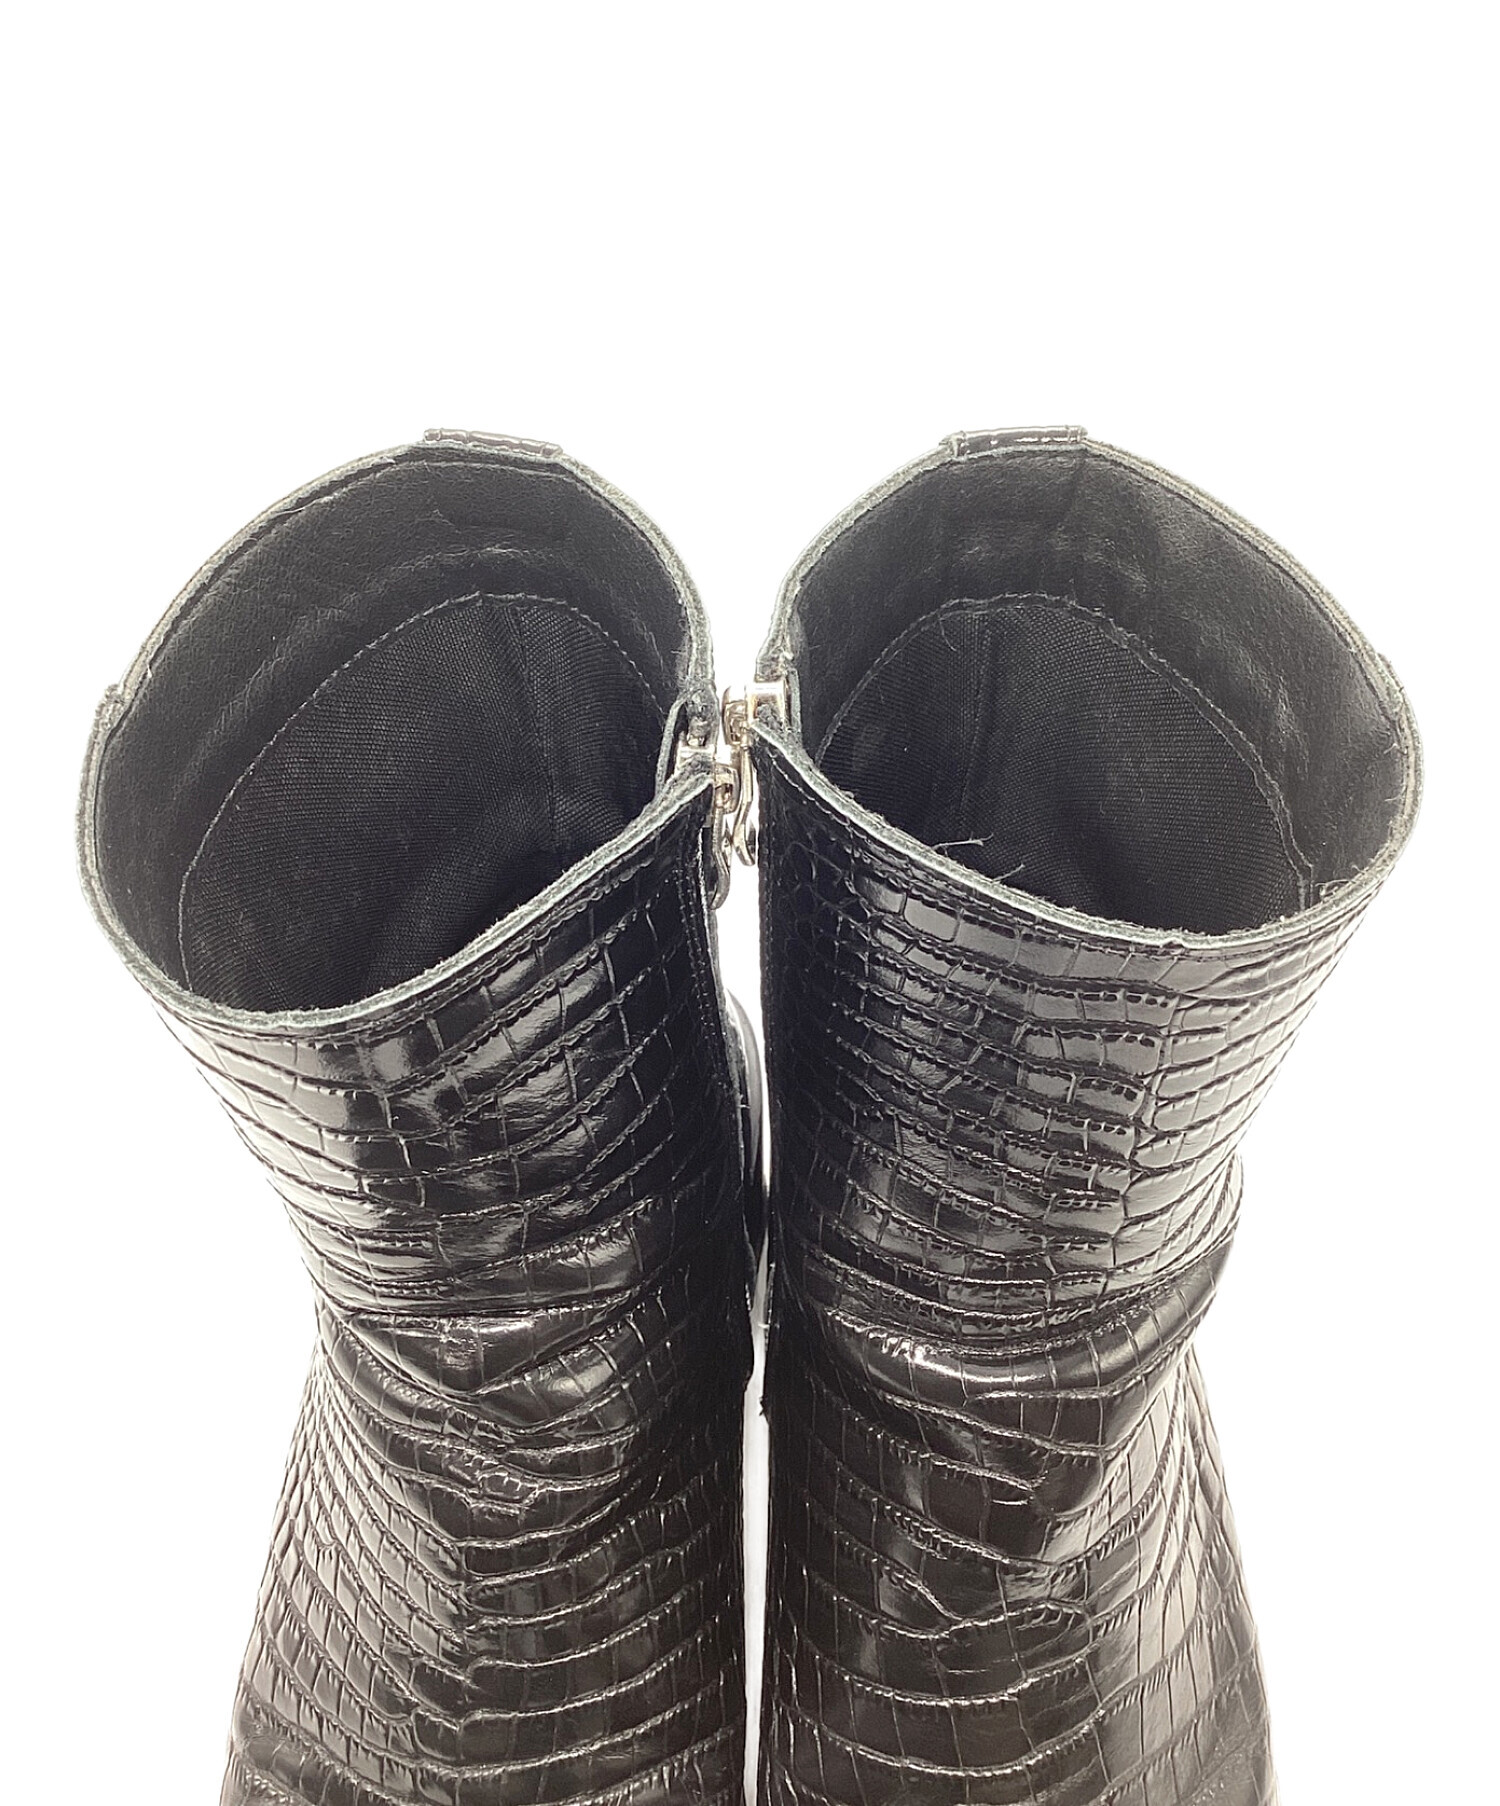 中古・古着通販】soerte (ソエルテ) Square toe leather boots